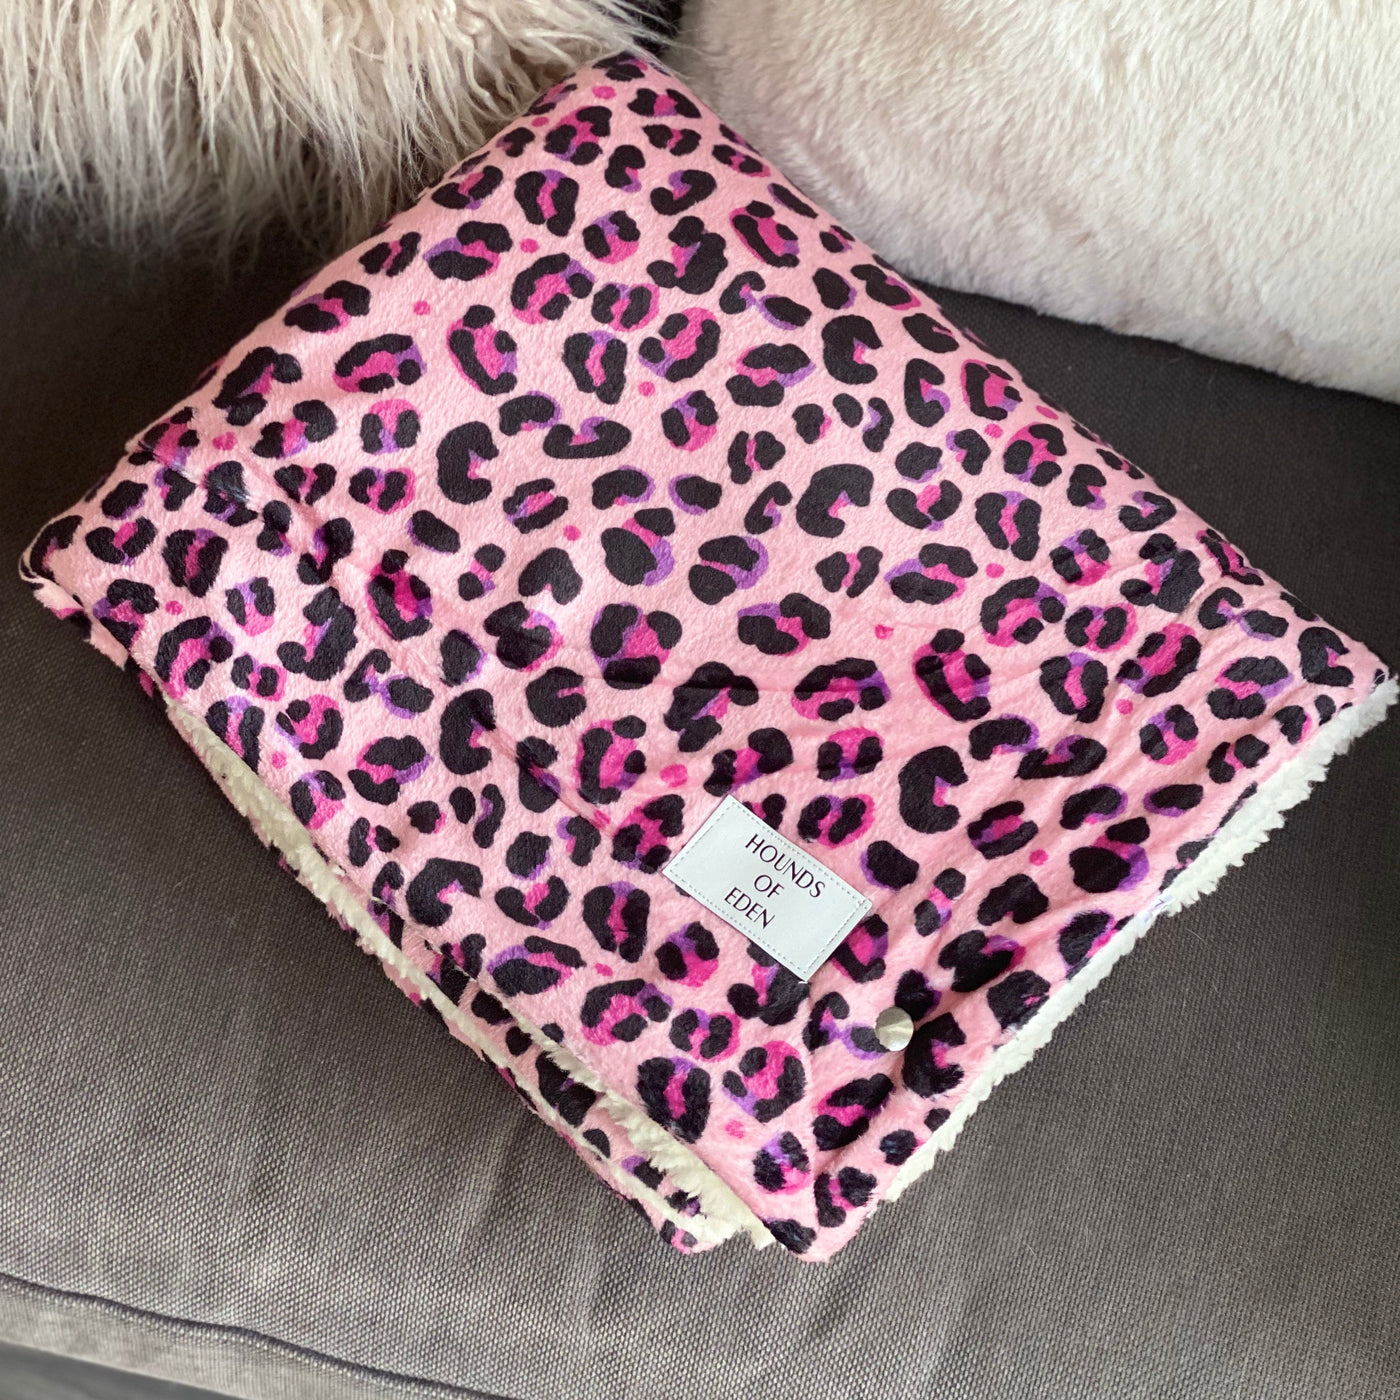 OUTLET - Blushing Leopard Snuggle Blanket